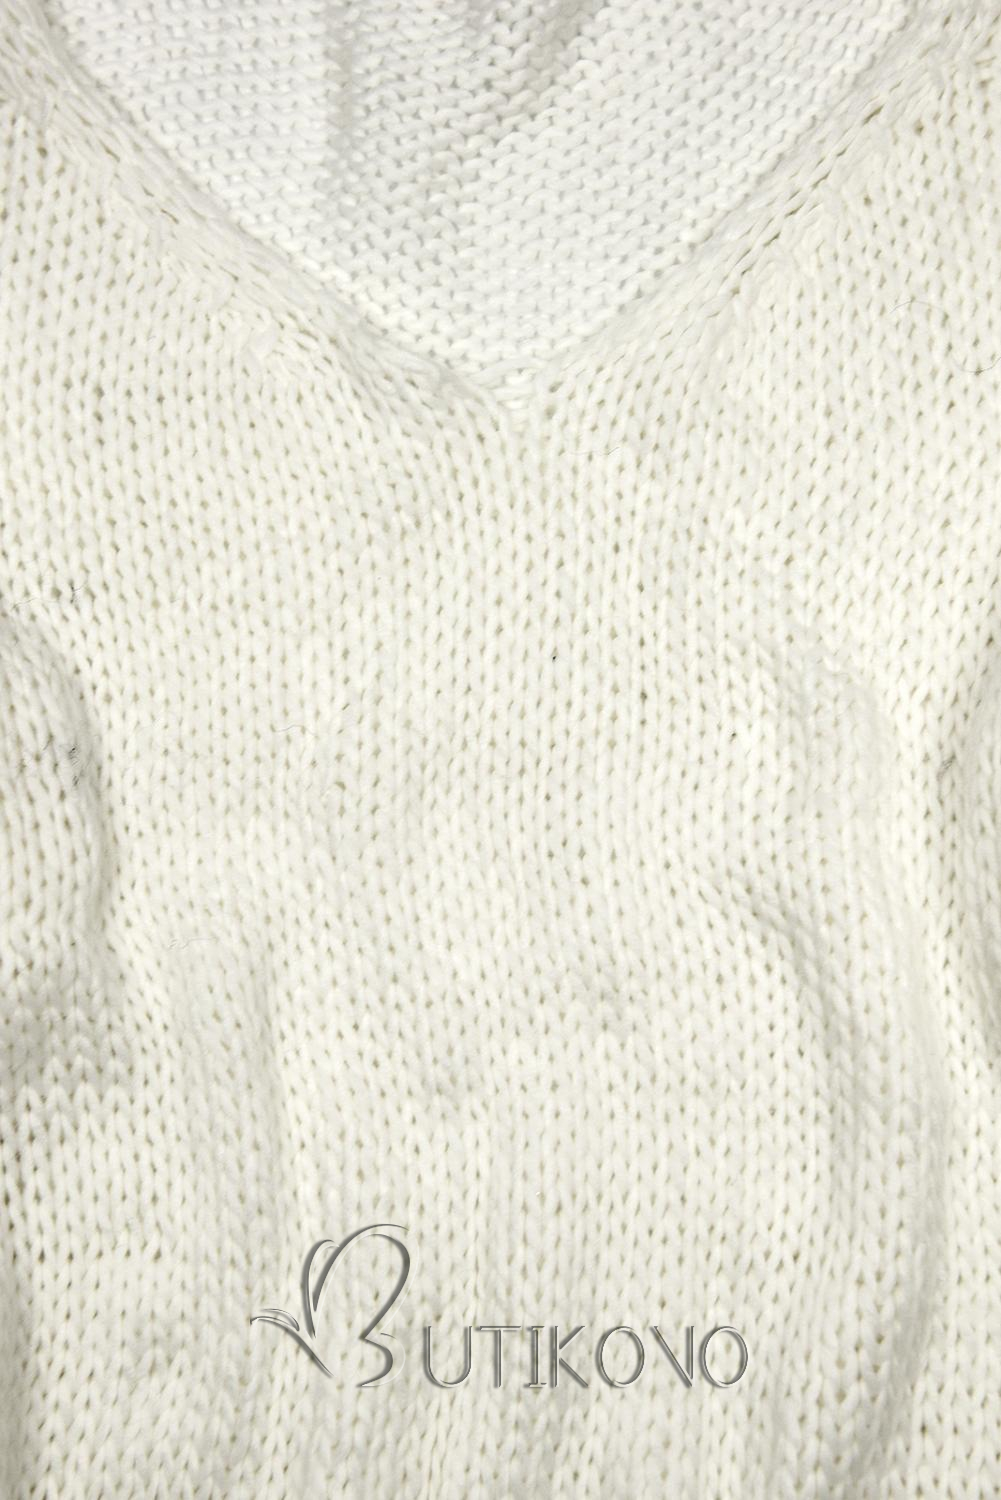 Bílý pletený pulovr